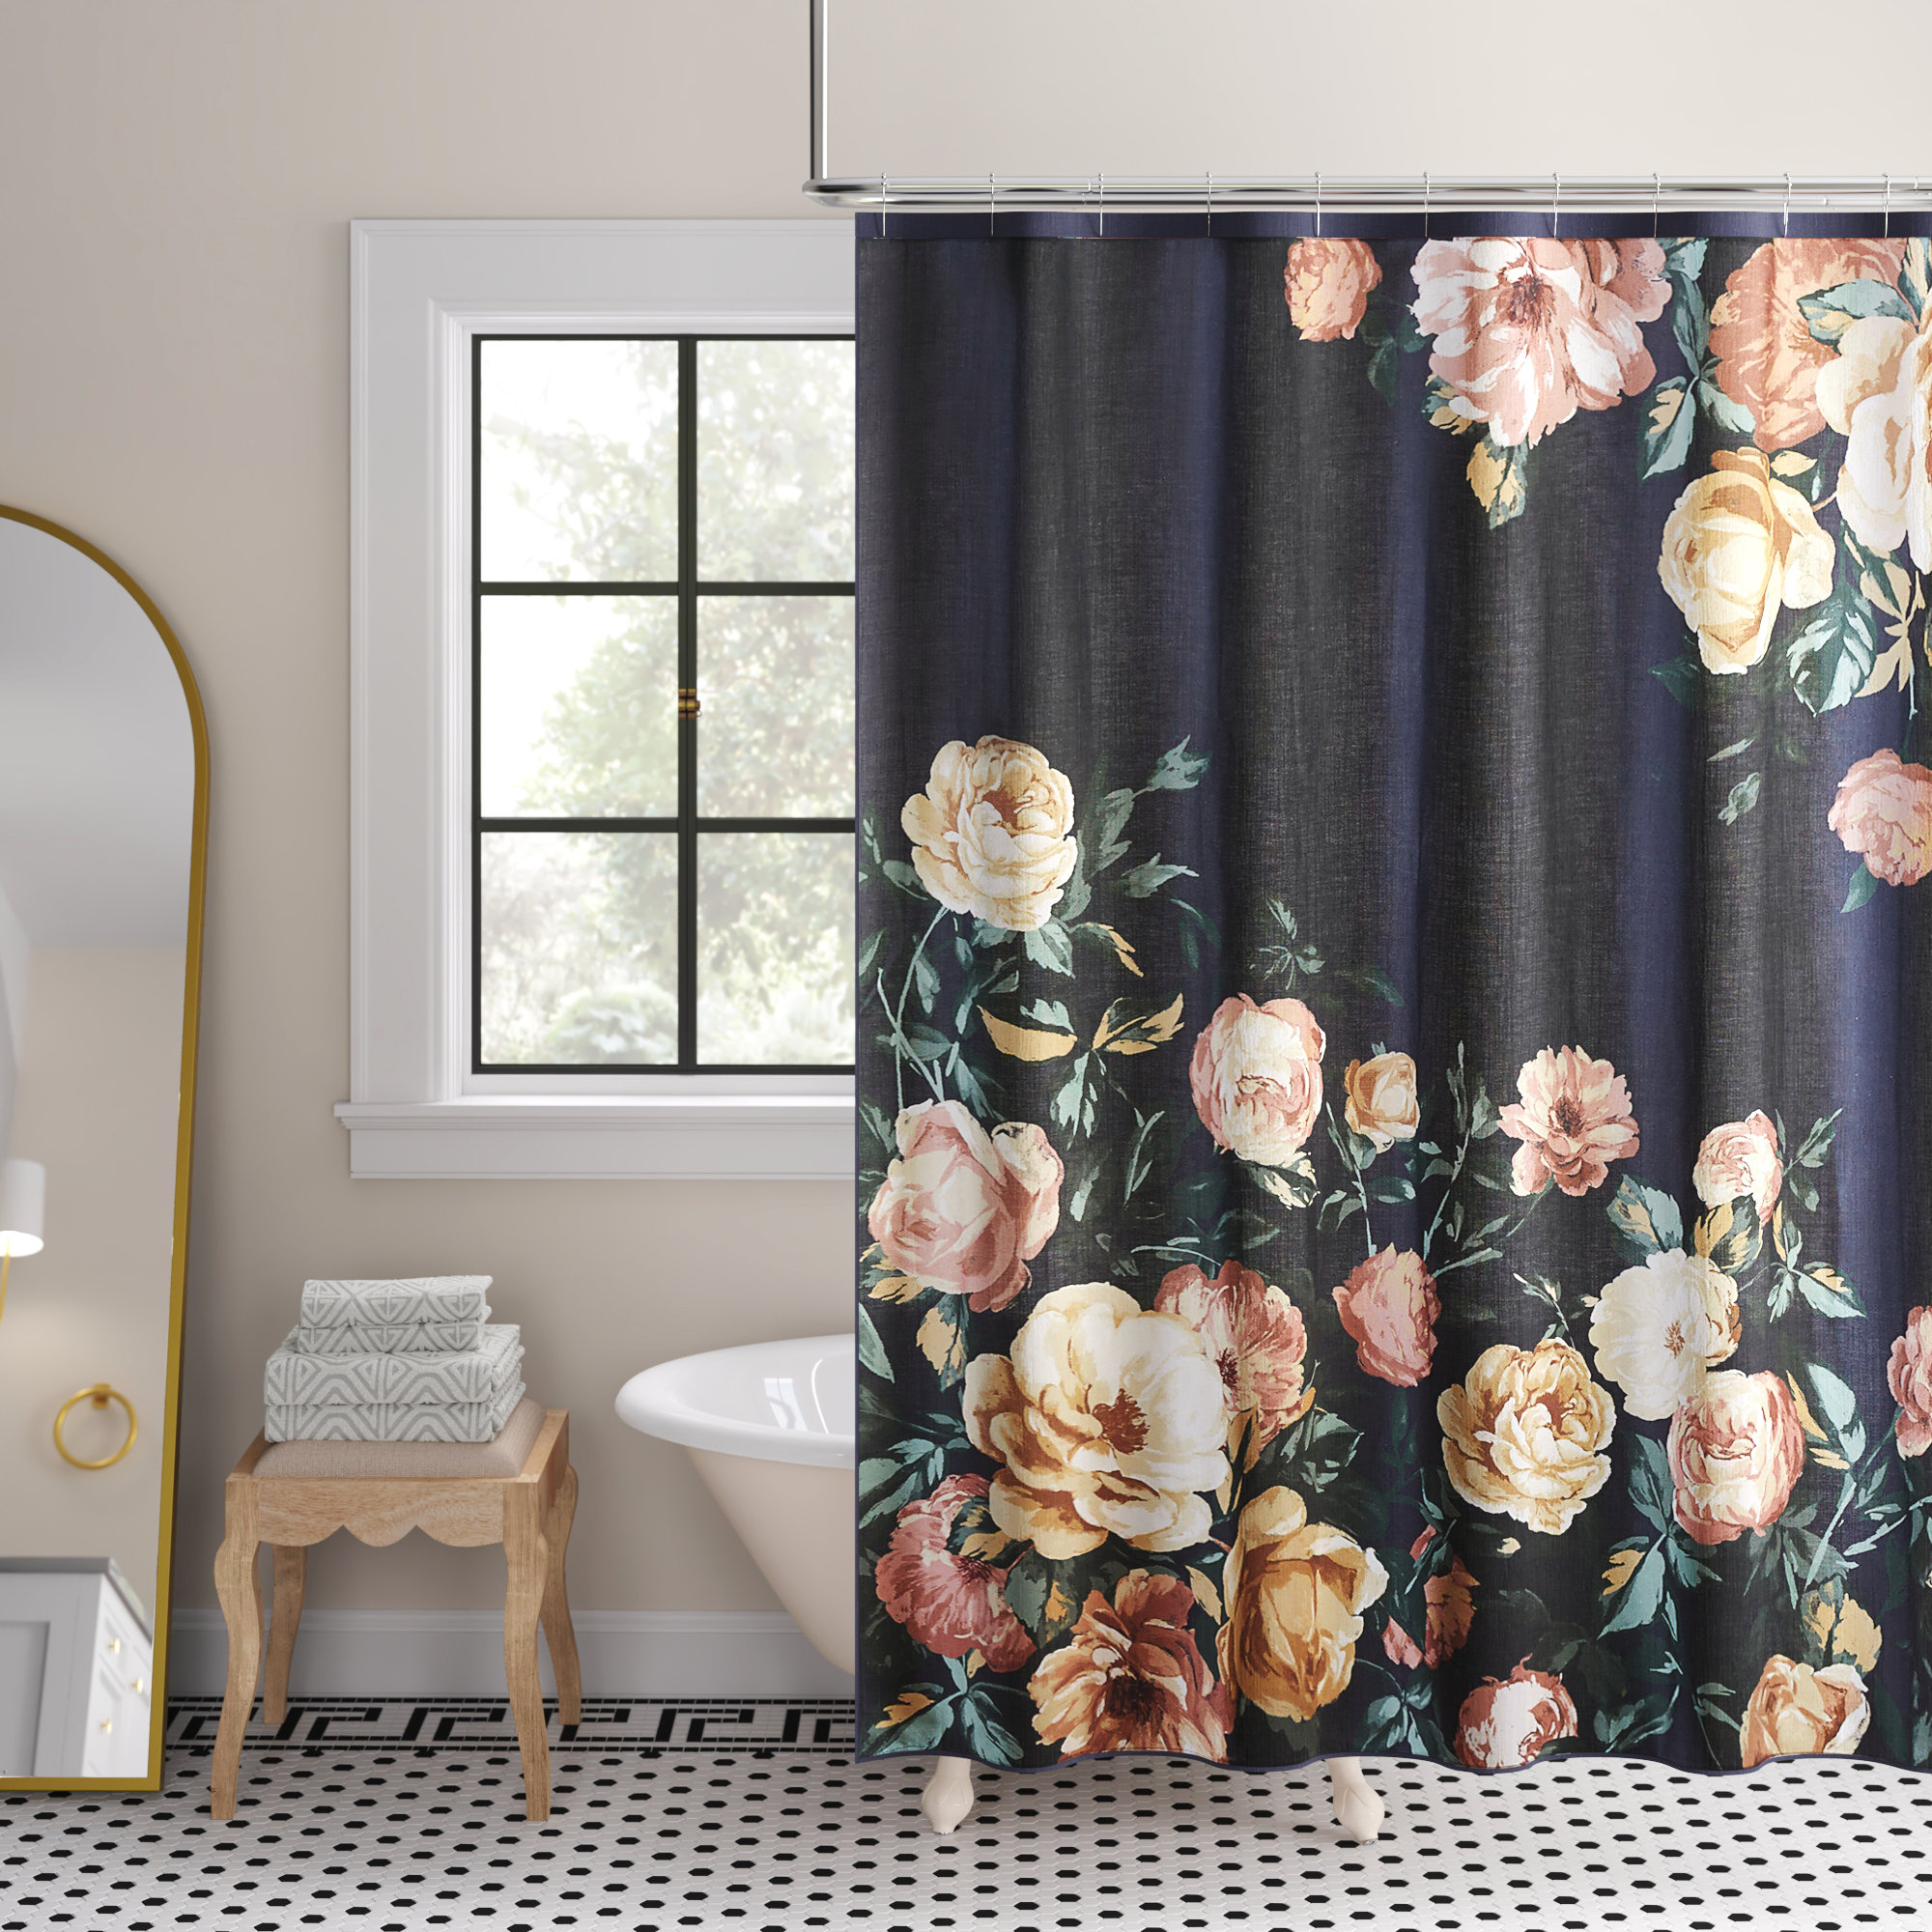 KRISIN Shower Curtain for Bathroom, Polyester Fabric Bathroom